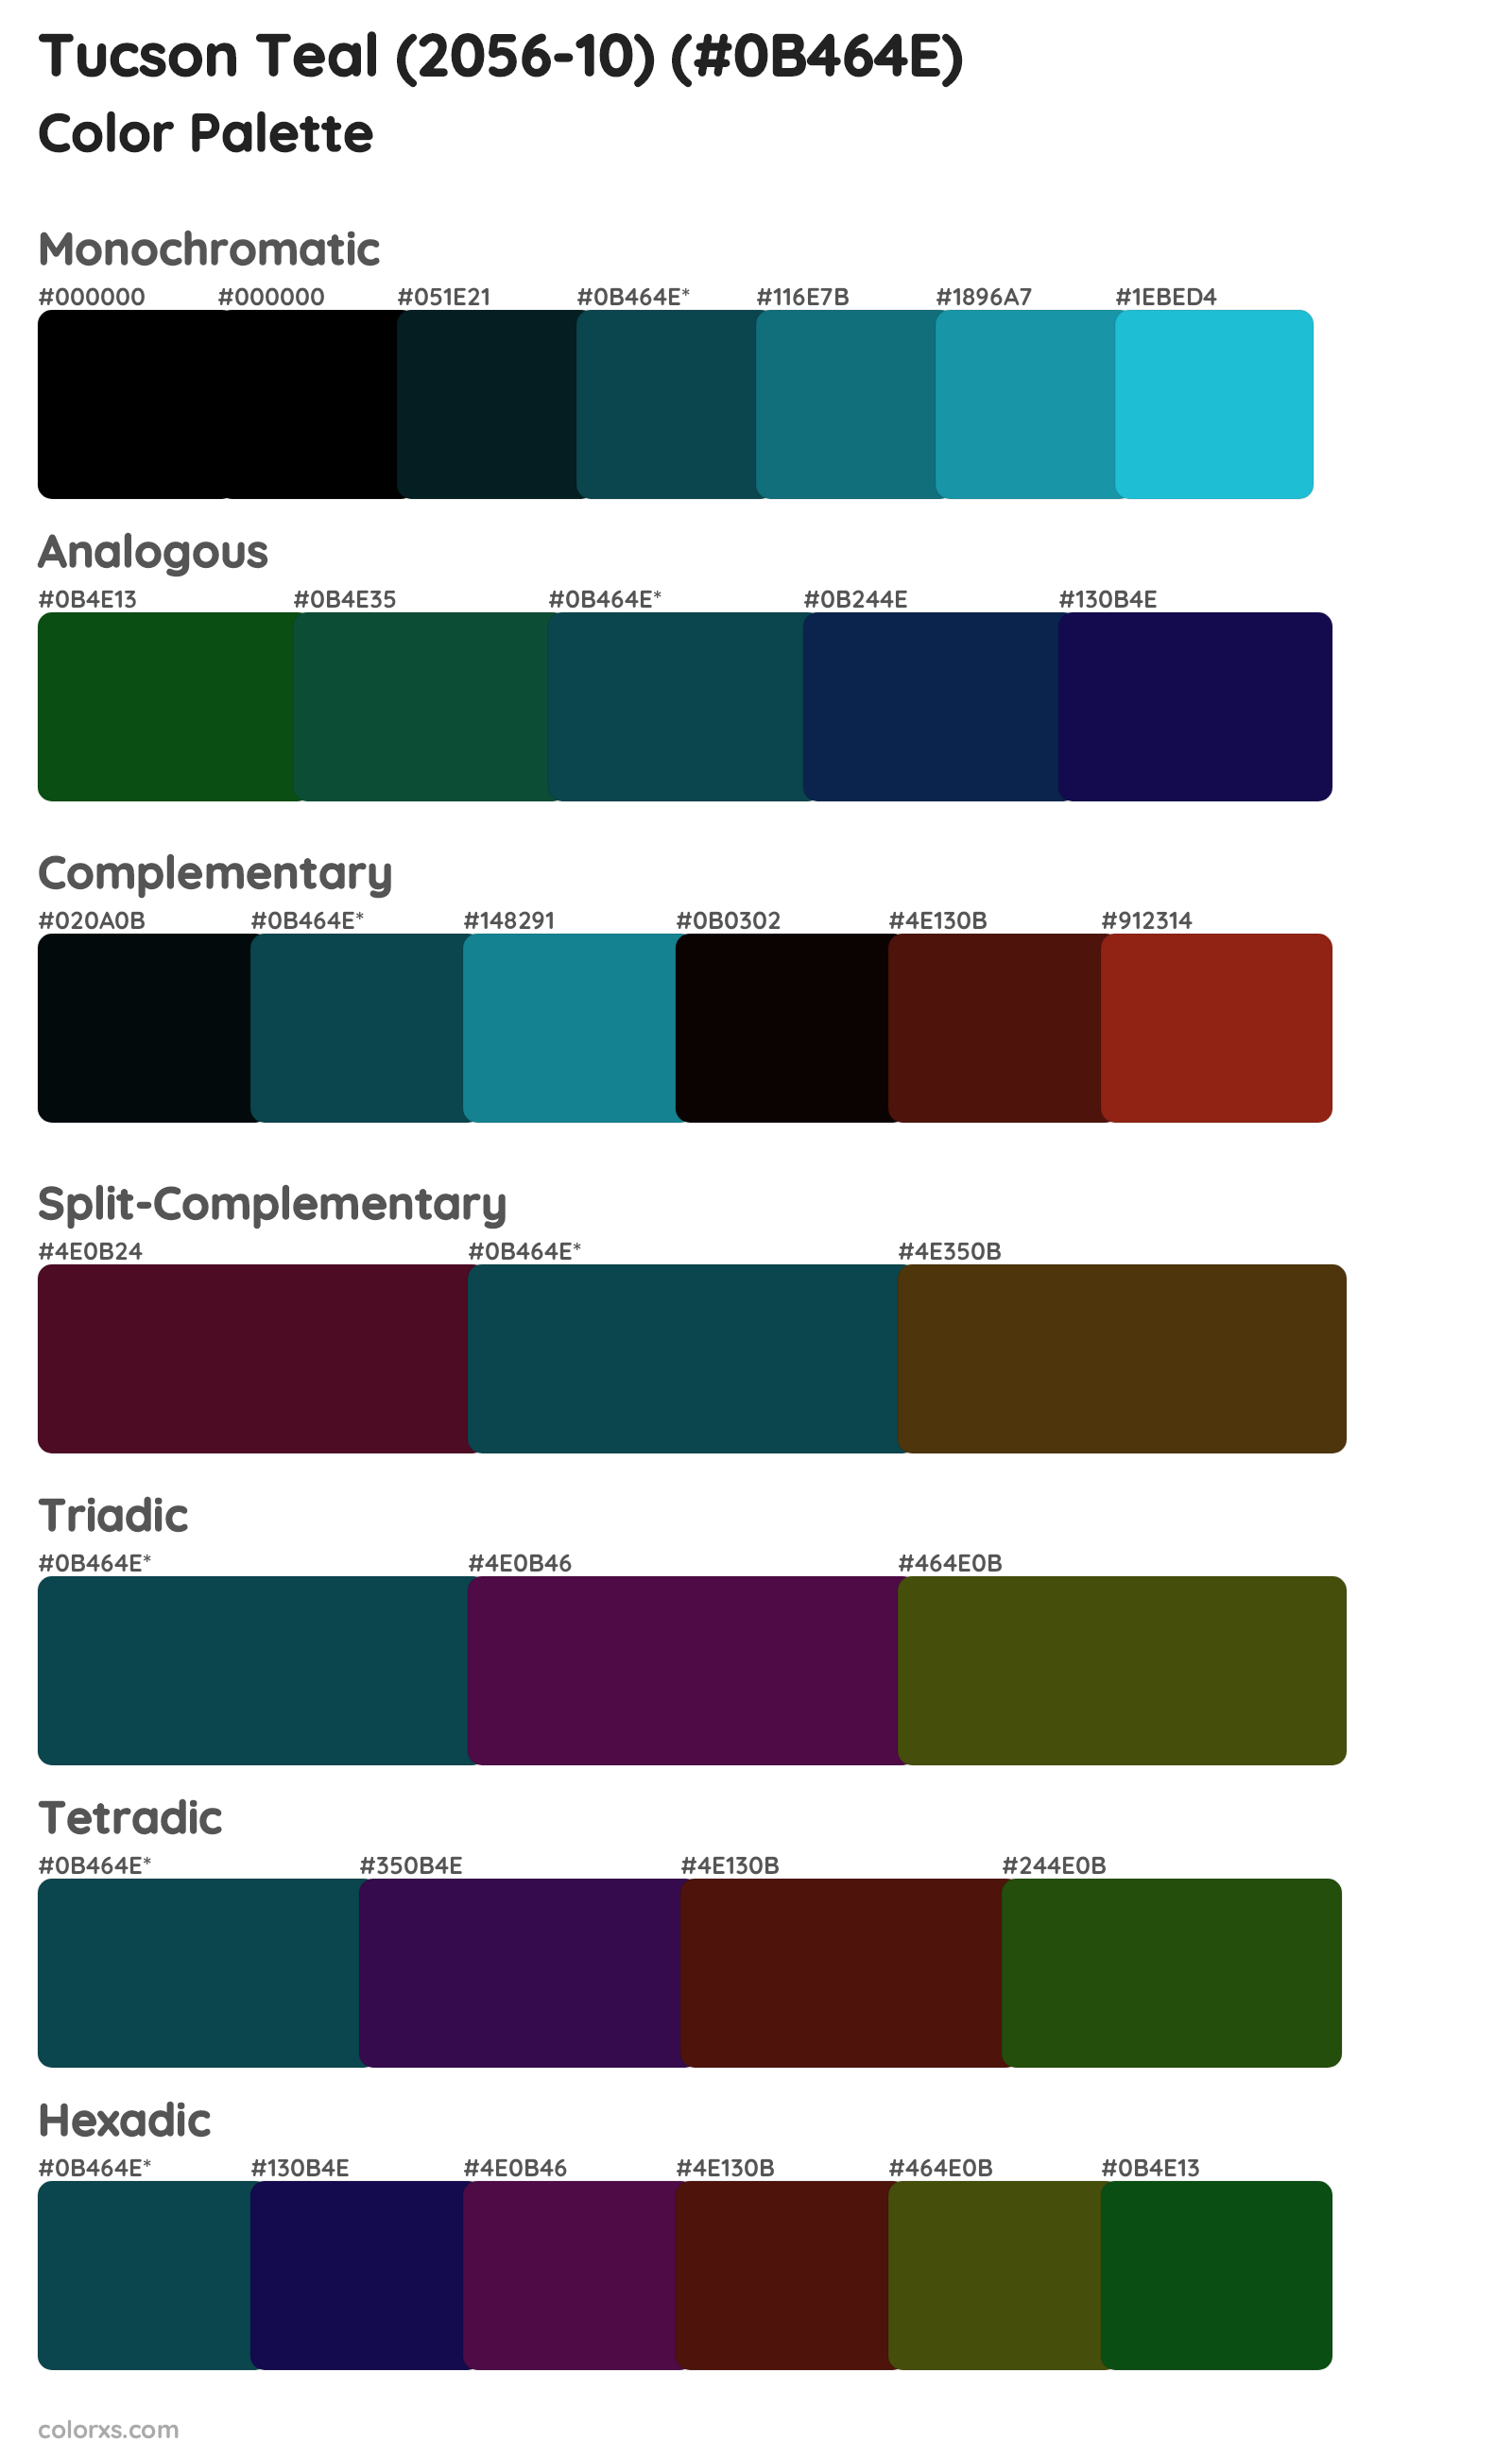 Tucson Teal (2056-10) Color Scheme Palettes